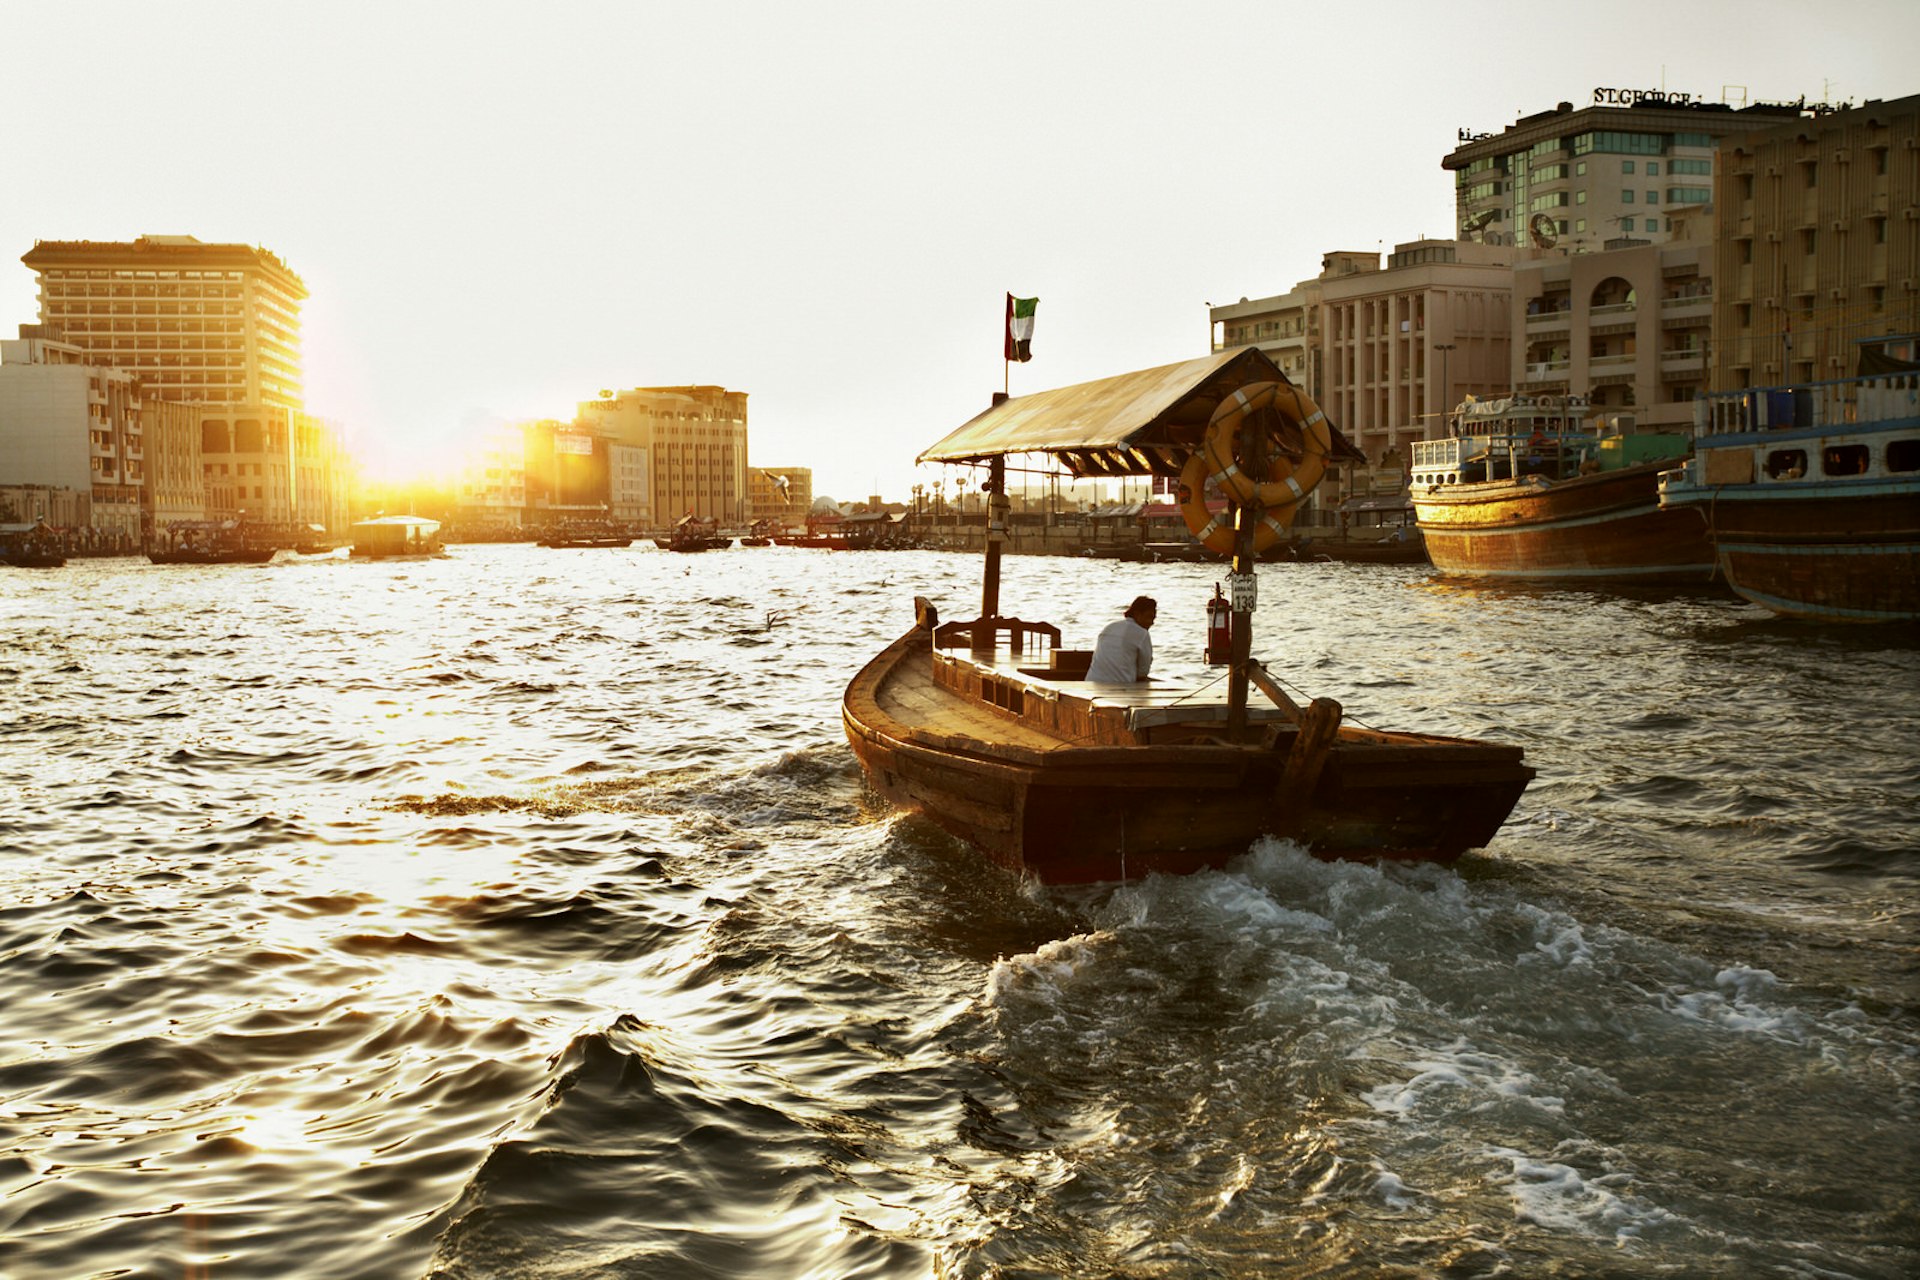 Korsar Dubaiviken på en abra, en traditionell träbåt som används för att taxi människor över bäcken.  Solen står lågt på skyline och delvis skymd av kontorsbyggnader.  En ensam man styr båten och det finns inga passagerare. 